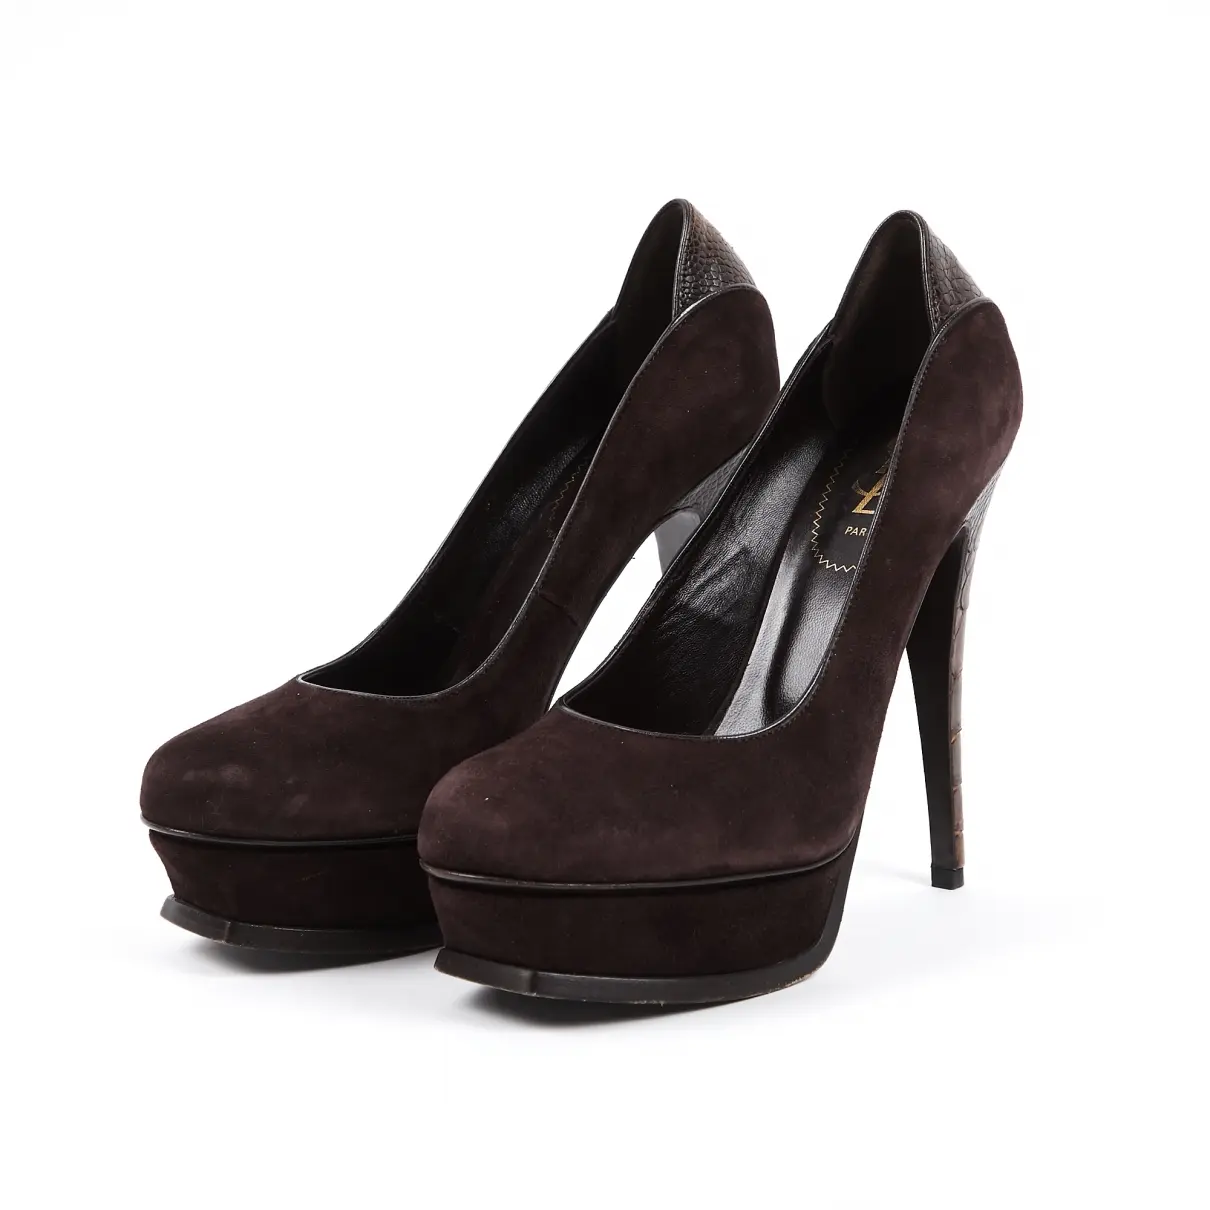 Yves Saint Laurent Palais heels for sale - Vintage